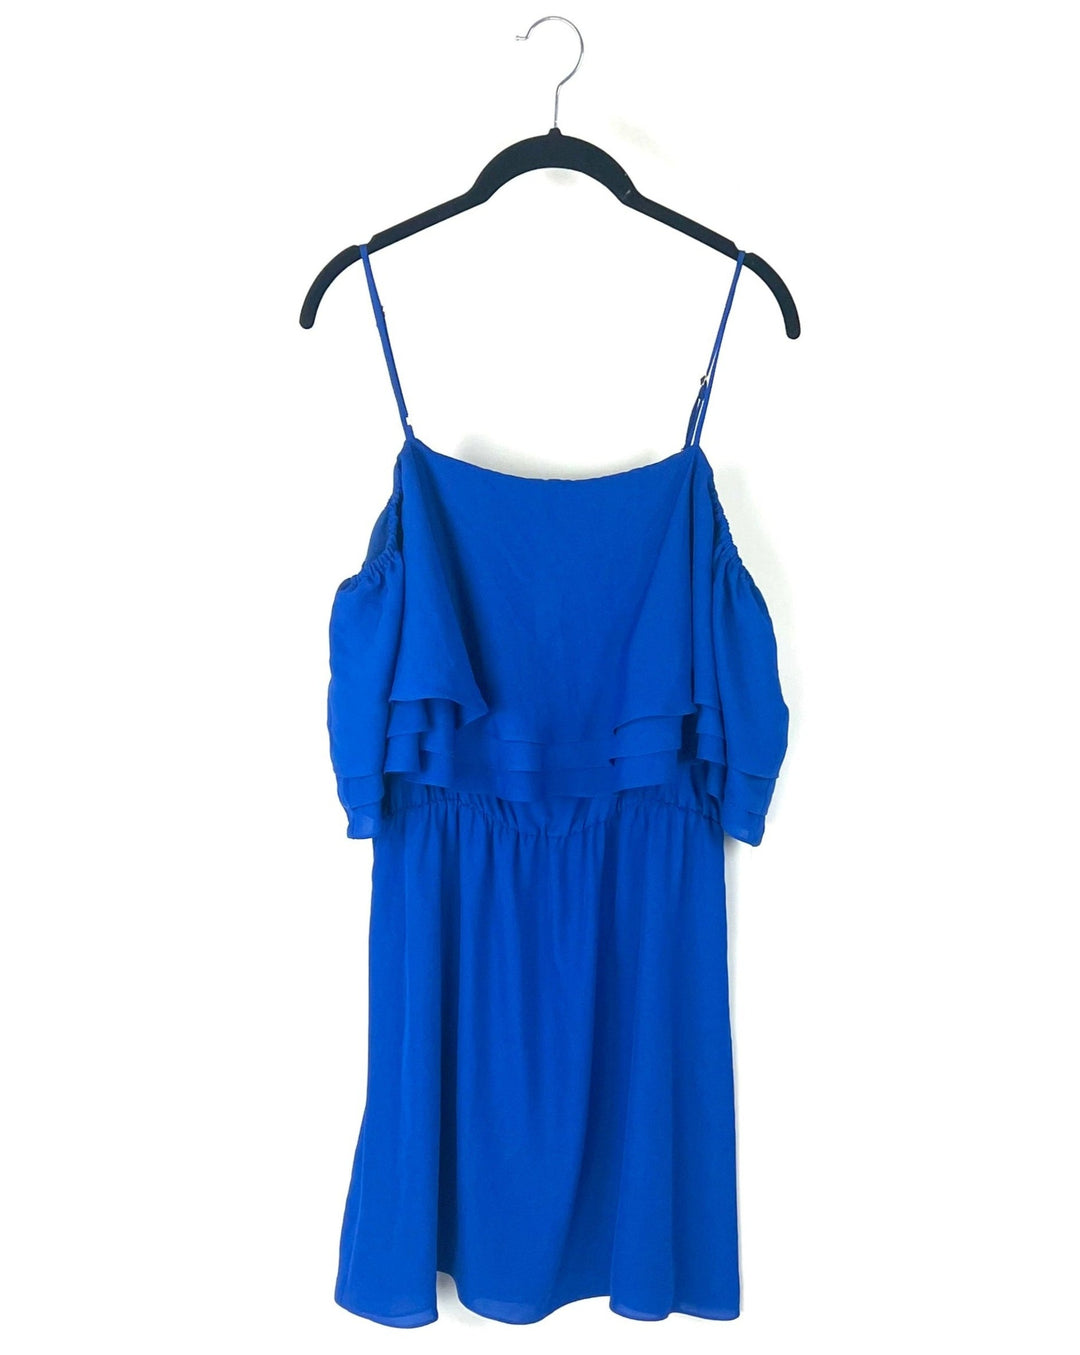 Blue Ruffle Dress - Size 4/6